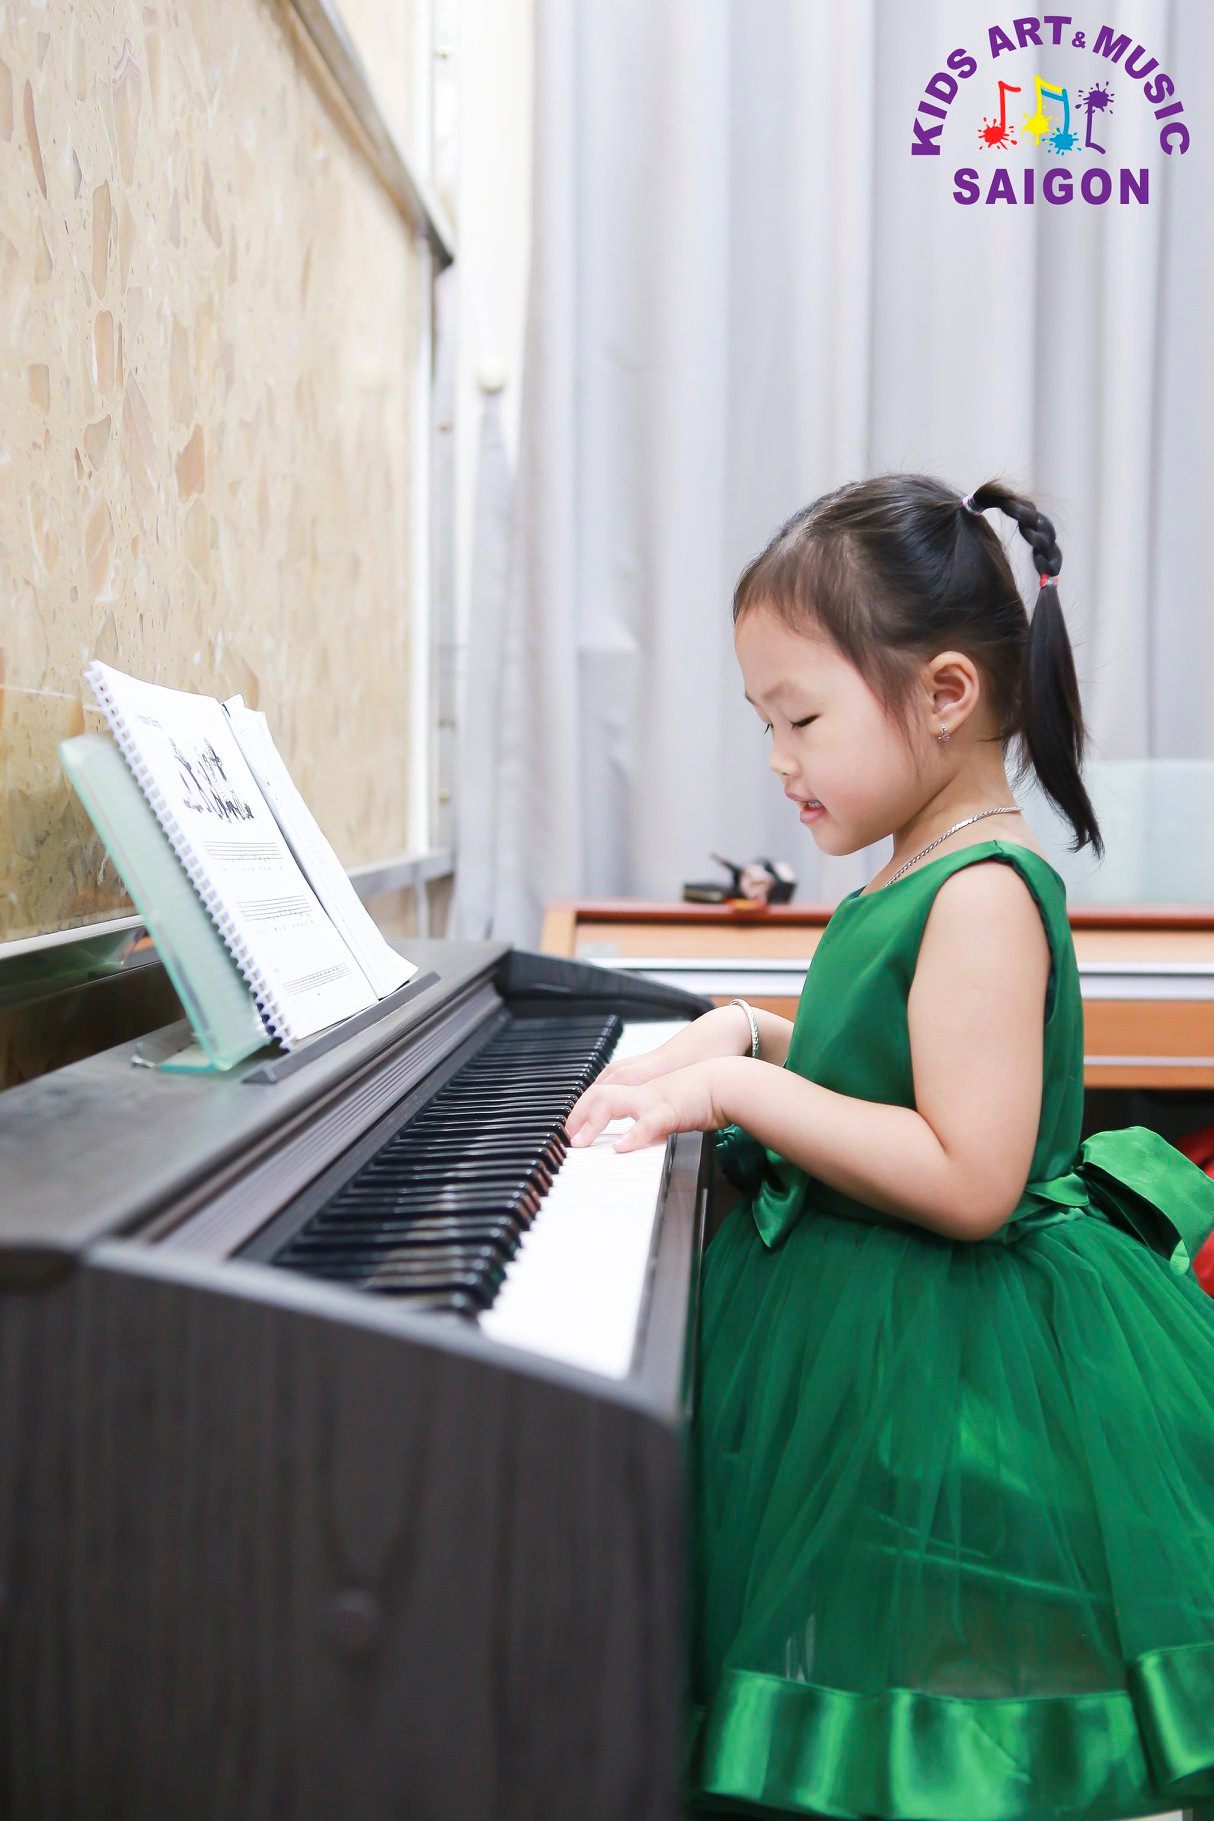 Giới thiệu chương trình học Piano dành cho trẻ em tại Kids Art & Music Saigon - HÌnh ảnh 1